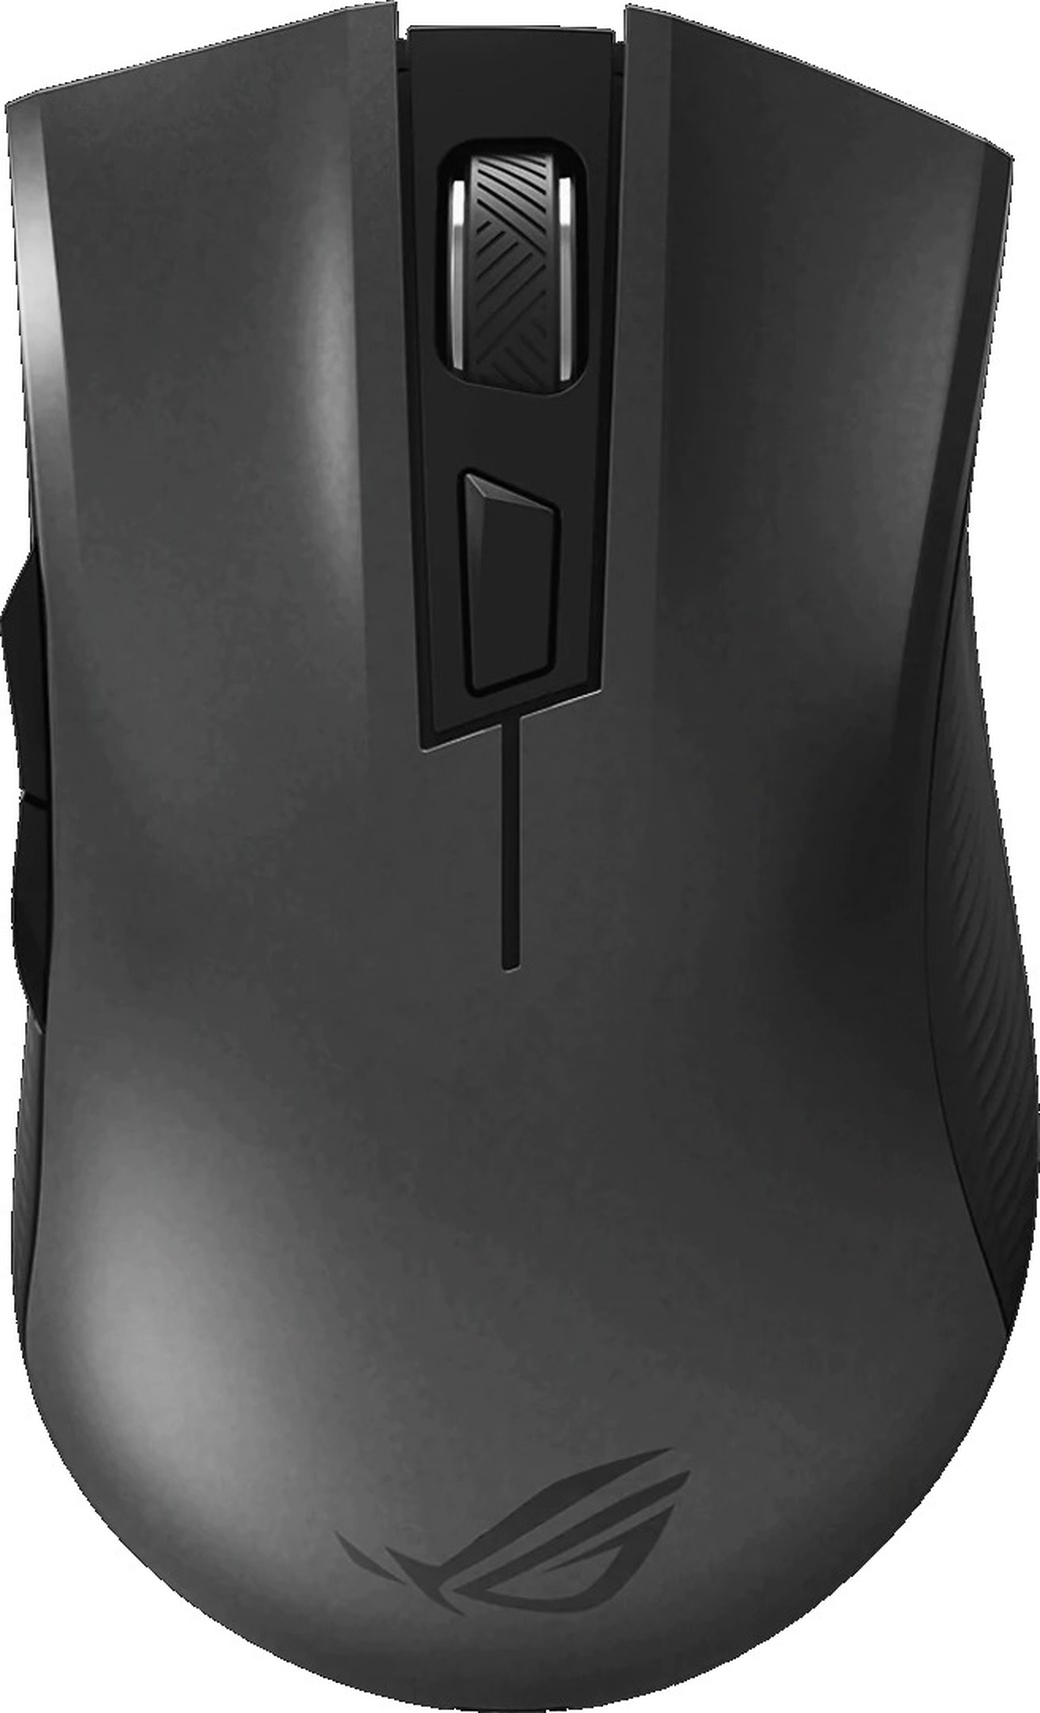 Игровая мышь ASUS ROG Strix Carry беспроводная чёрная (2.4GHz/Bluetooth, 6 кнопок, Omron, 7200 dpi, USB, чехол) фото